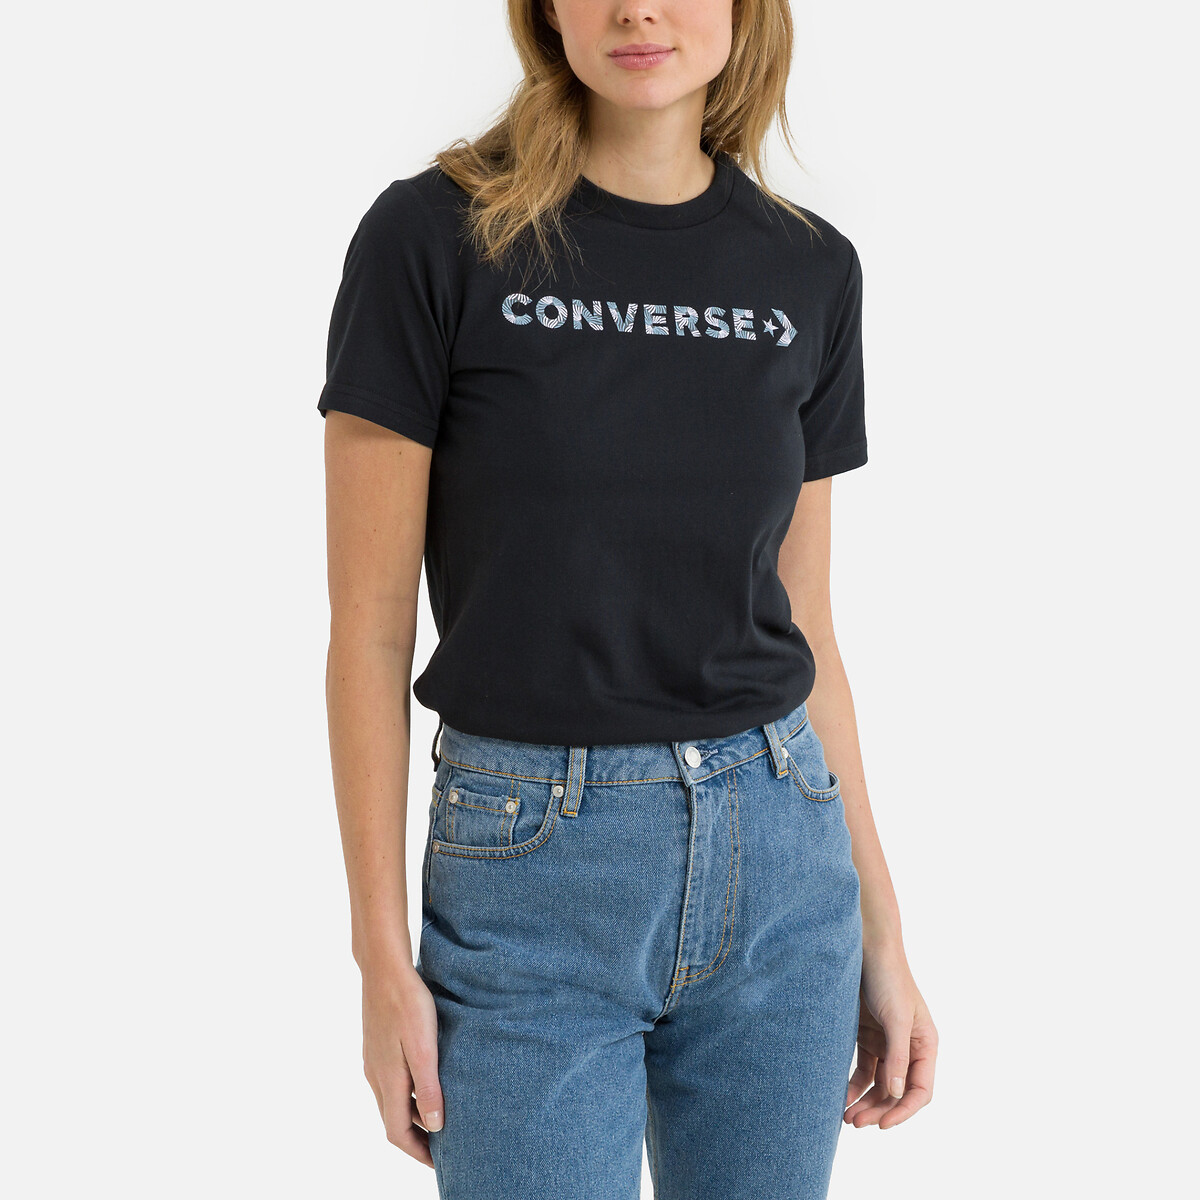 T-shirt wordmark, klassische Redoute schnittform schwarz | La Converse